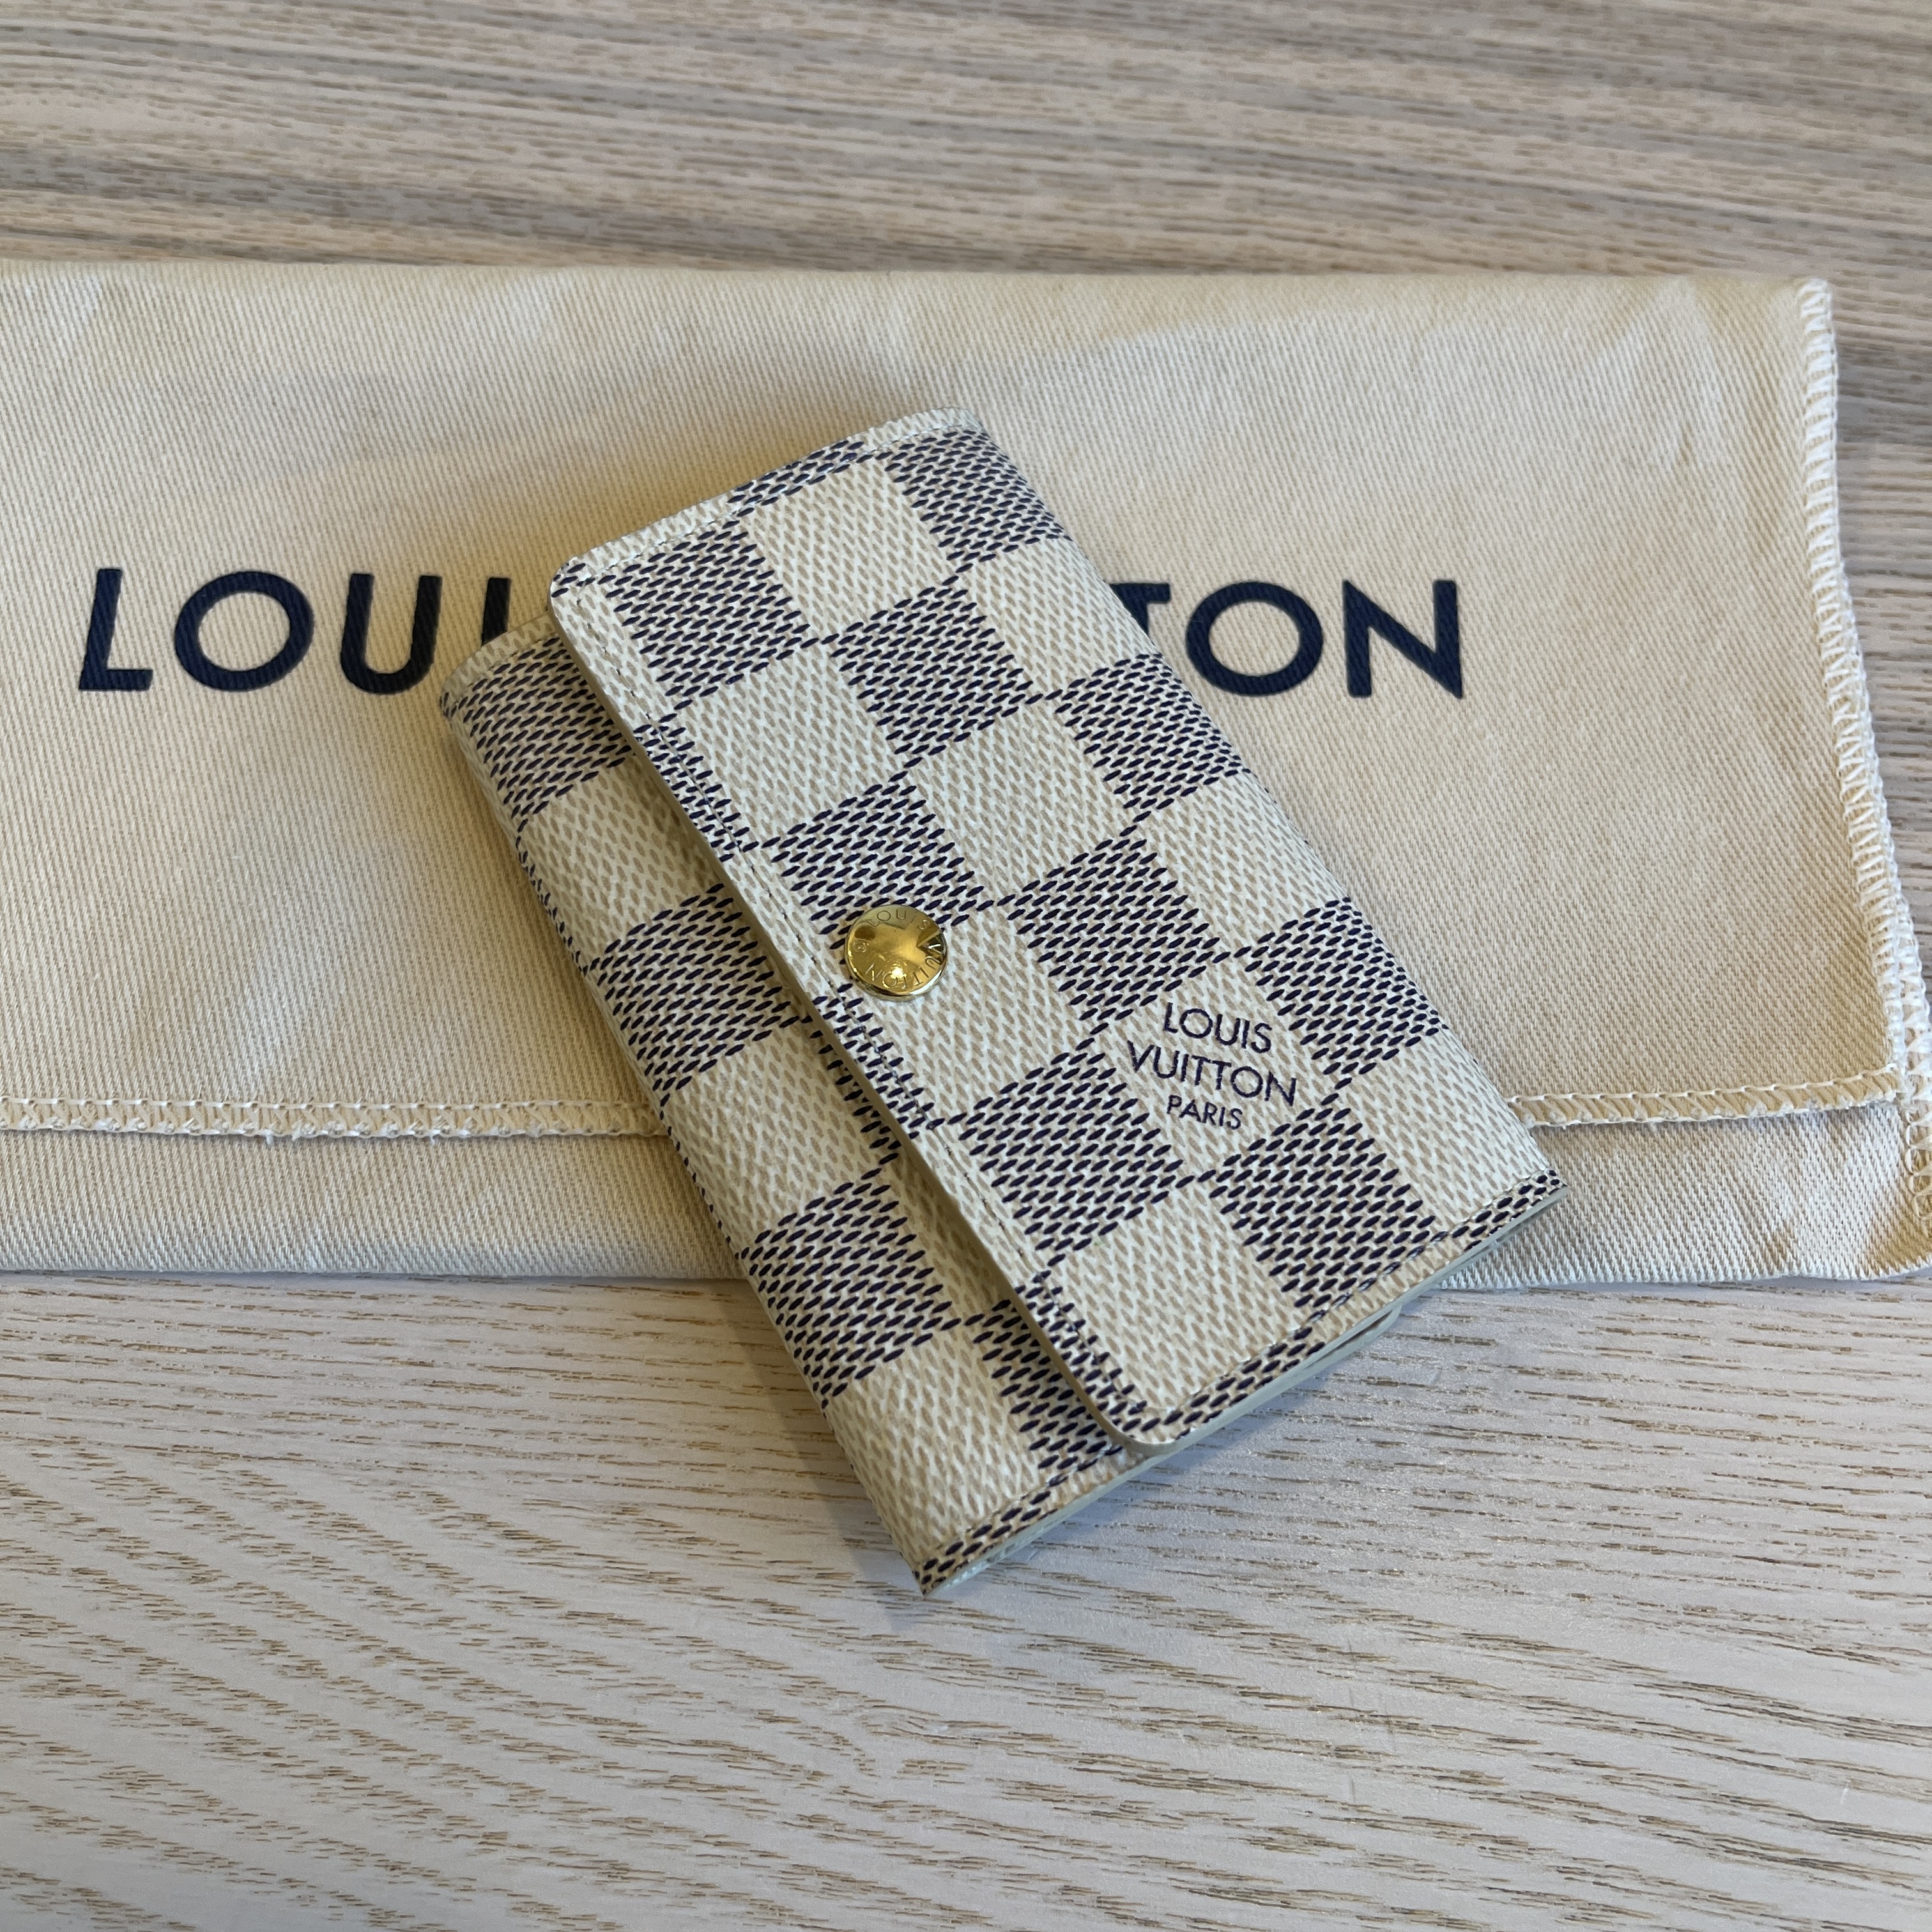 Louis Vuitton 6 Ring Key Holder